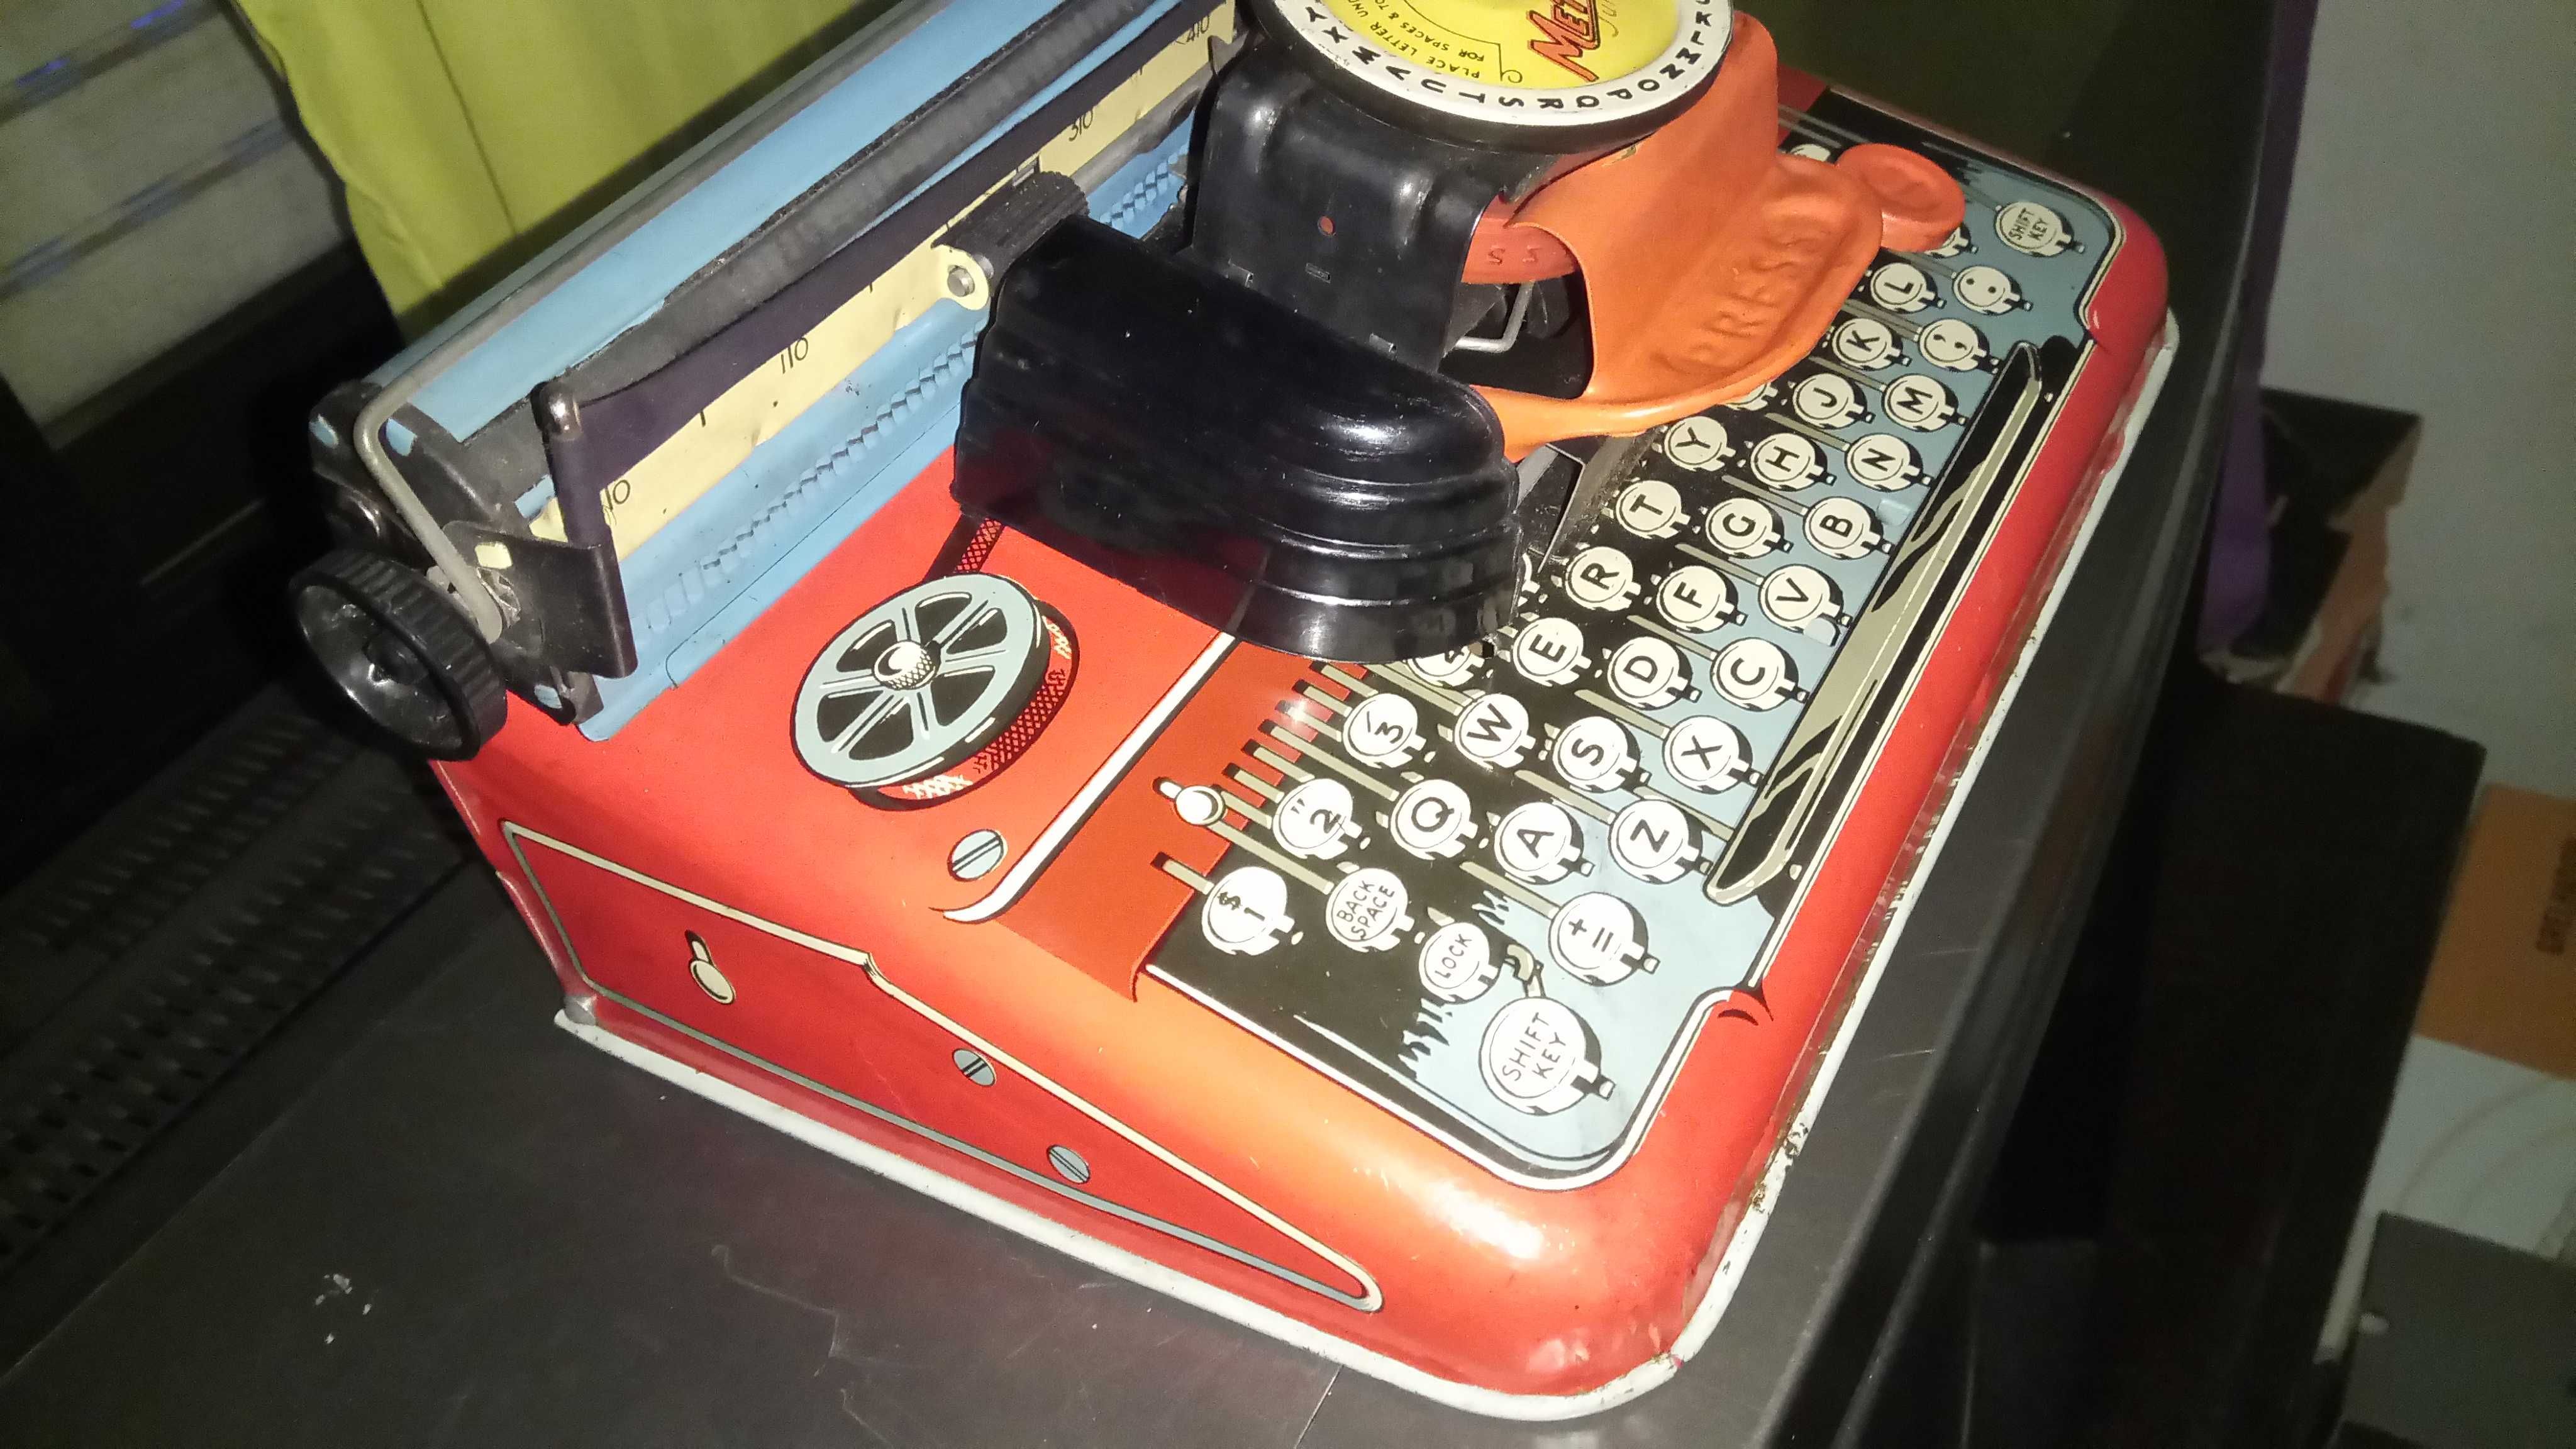 Máquina de escrever Mettype Junior